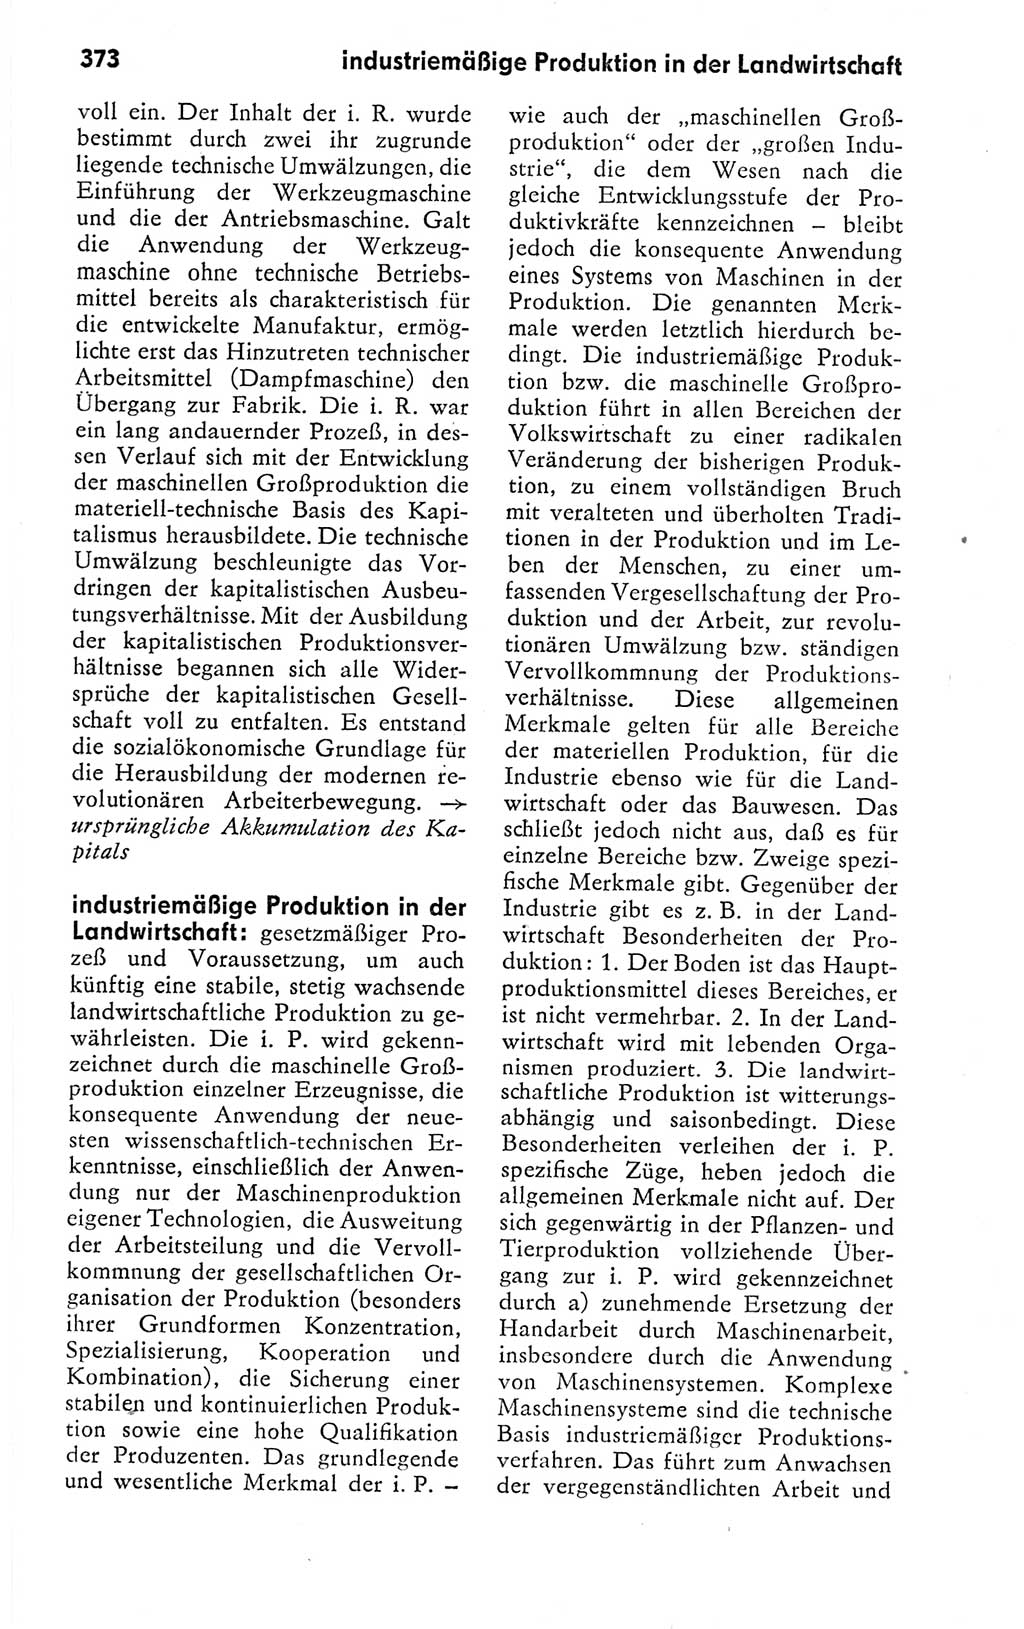 Kleines politisches Wörterbuch [Deutsche Demokratische Republik (DDR)] 1978, Seite 373 (Kl. pol. Wb. DDR 1978, S. 373)